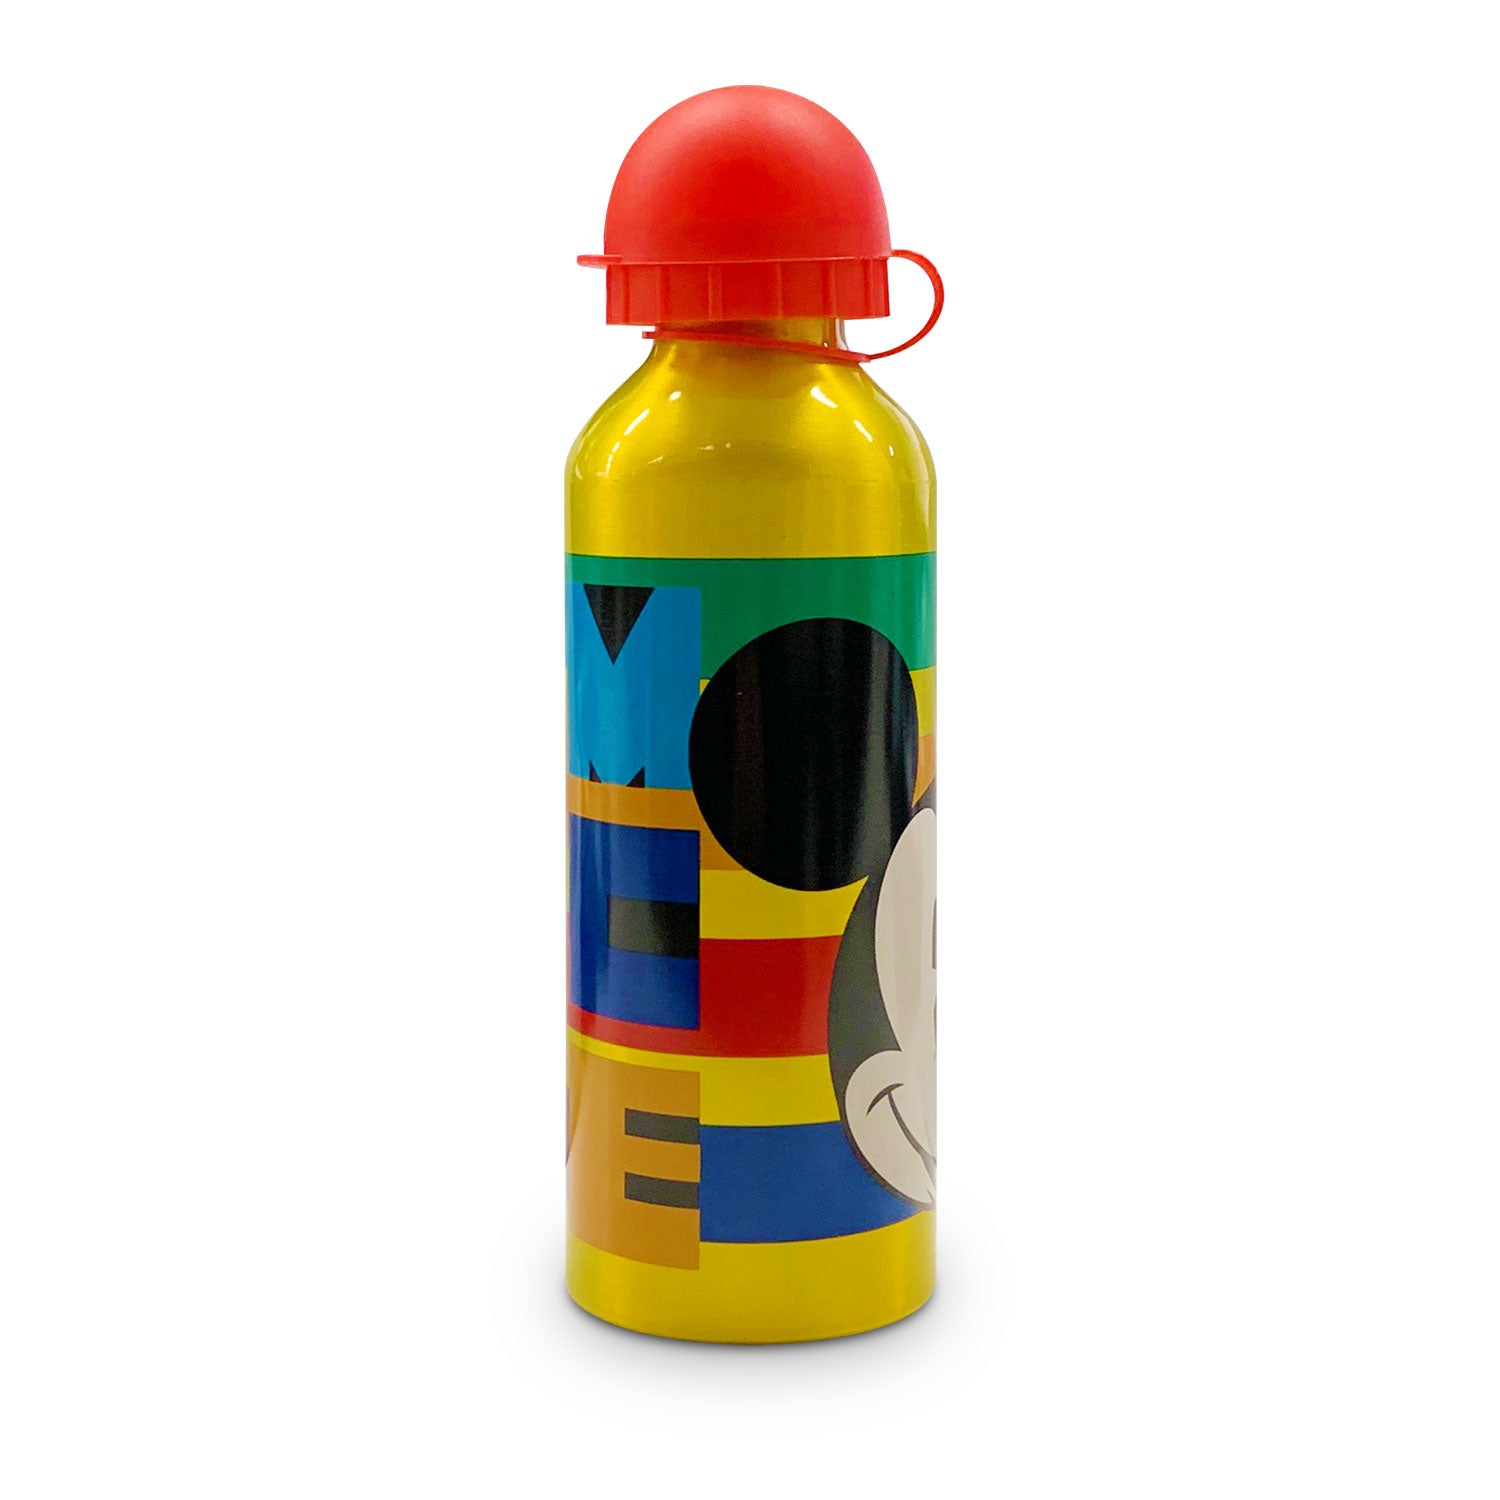 Borraccia bambini Disney Mickey Mouse bottiglia allumino e beccuccio 500ml 4963